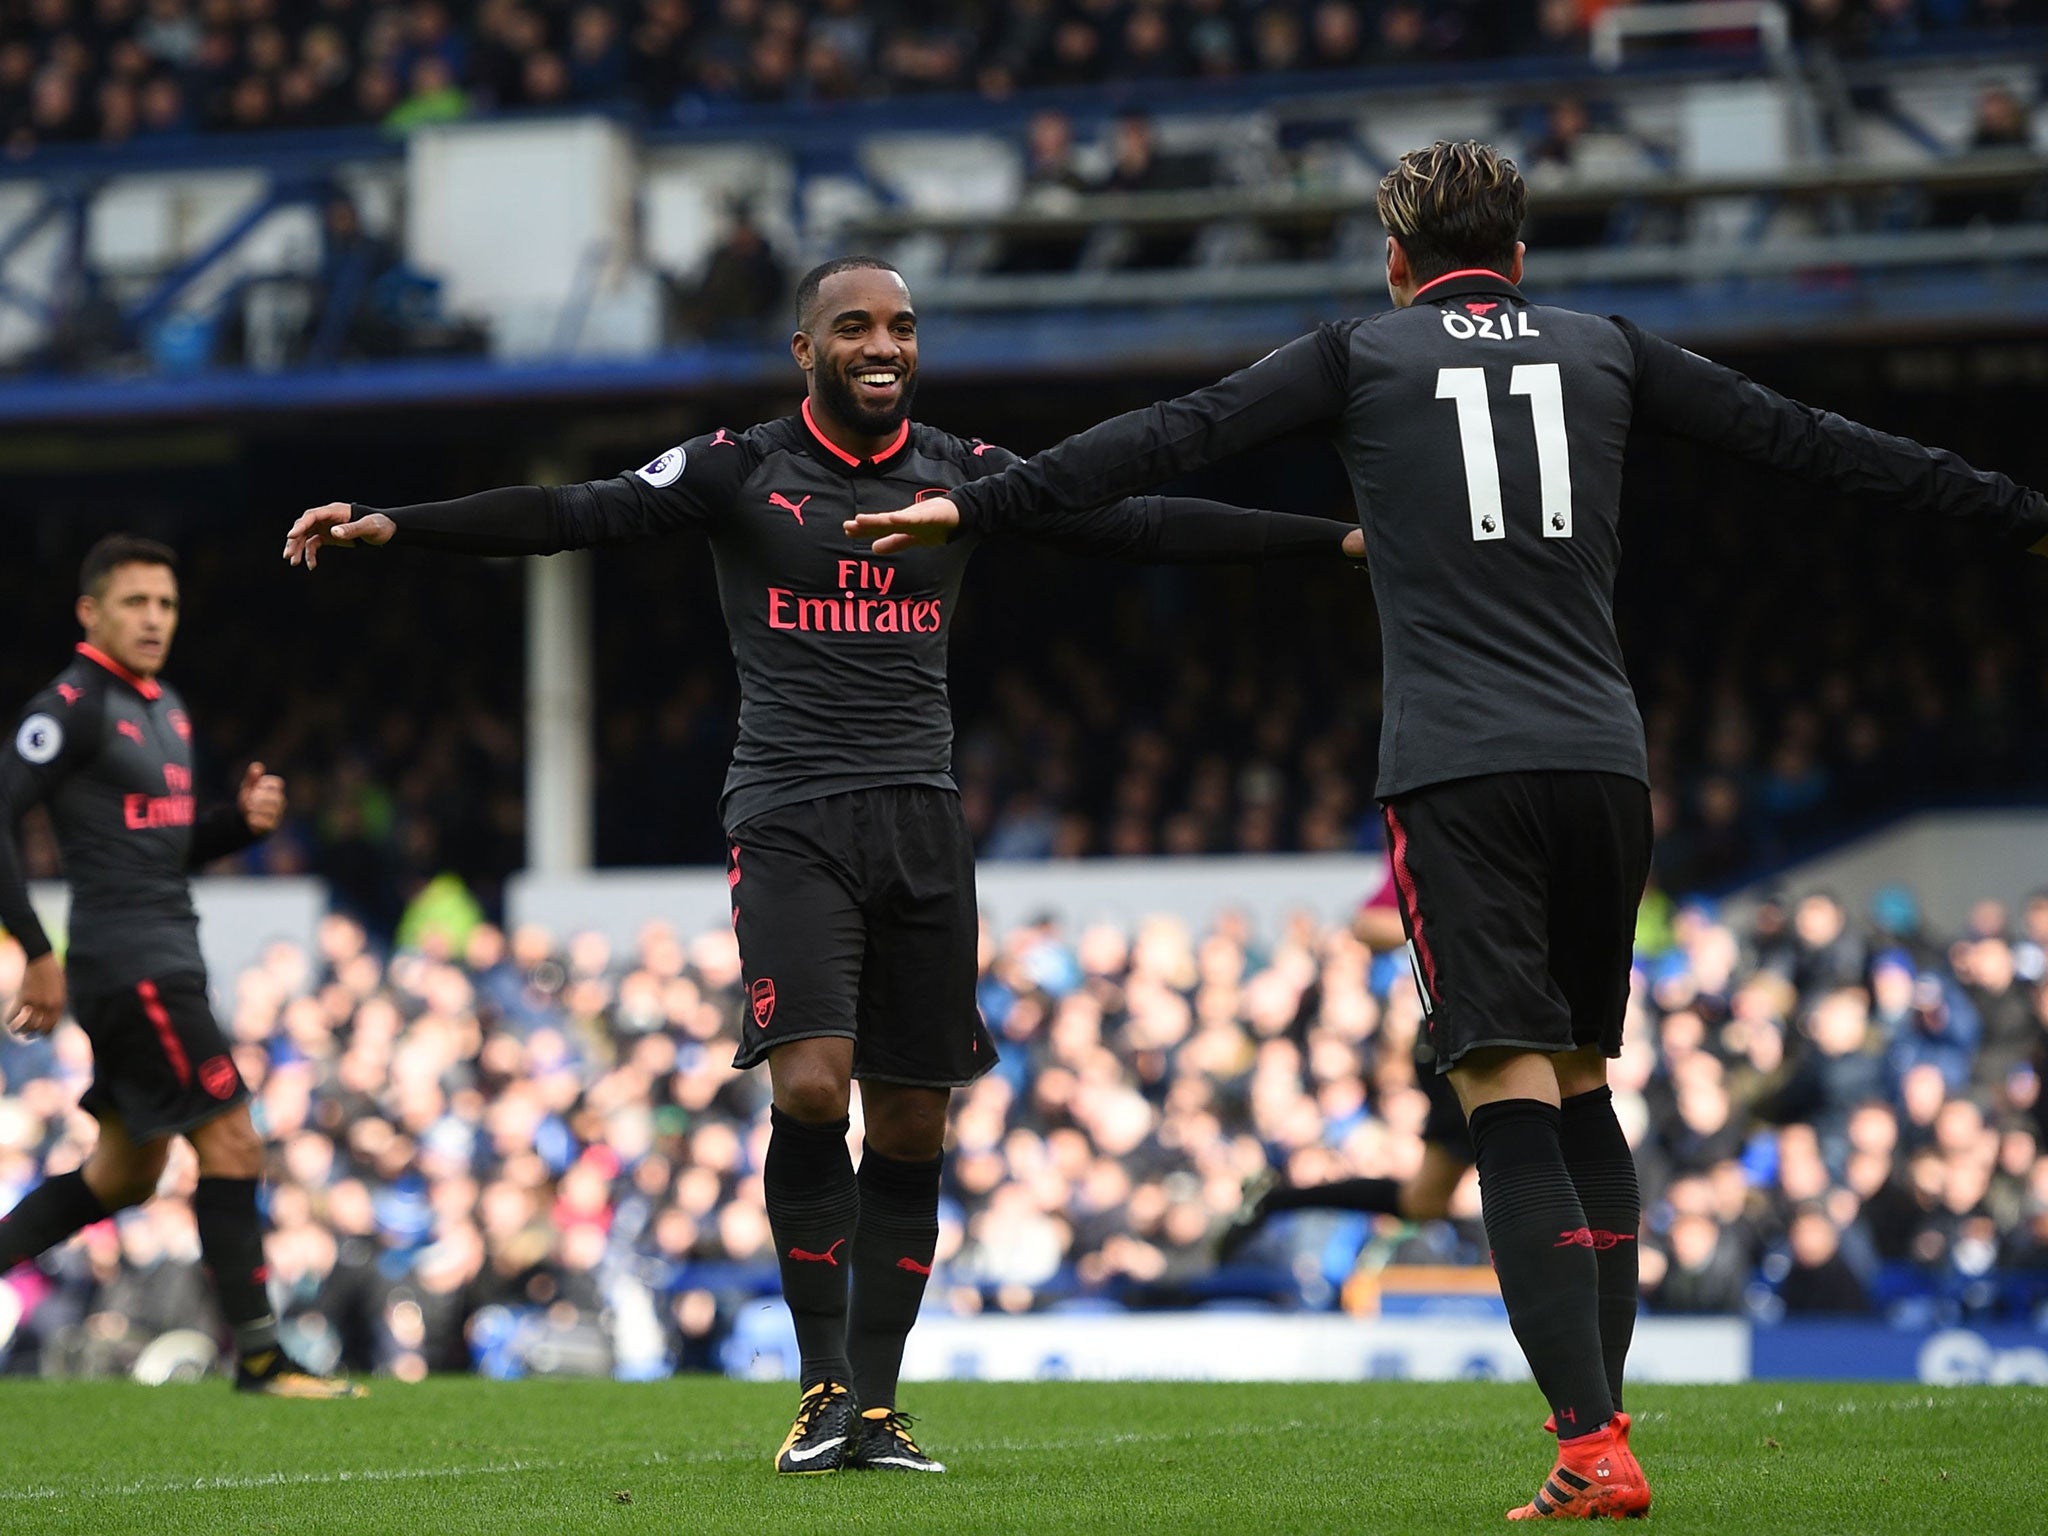 Alexandre Lacazette celebrates scoring Arsenal's third